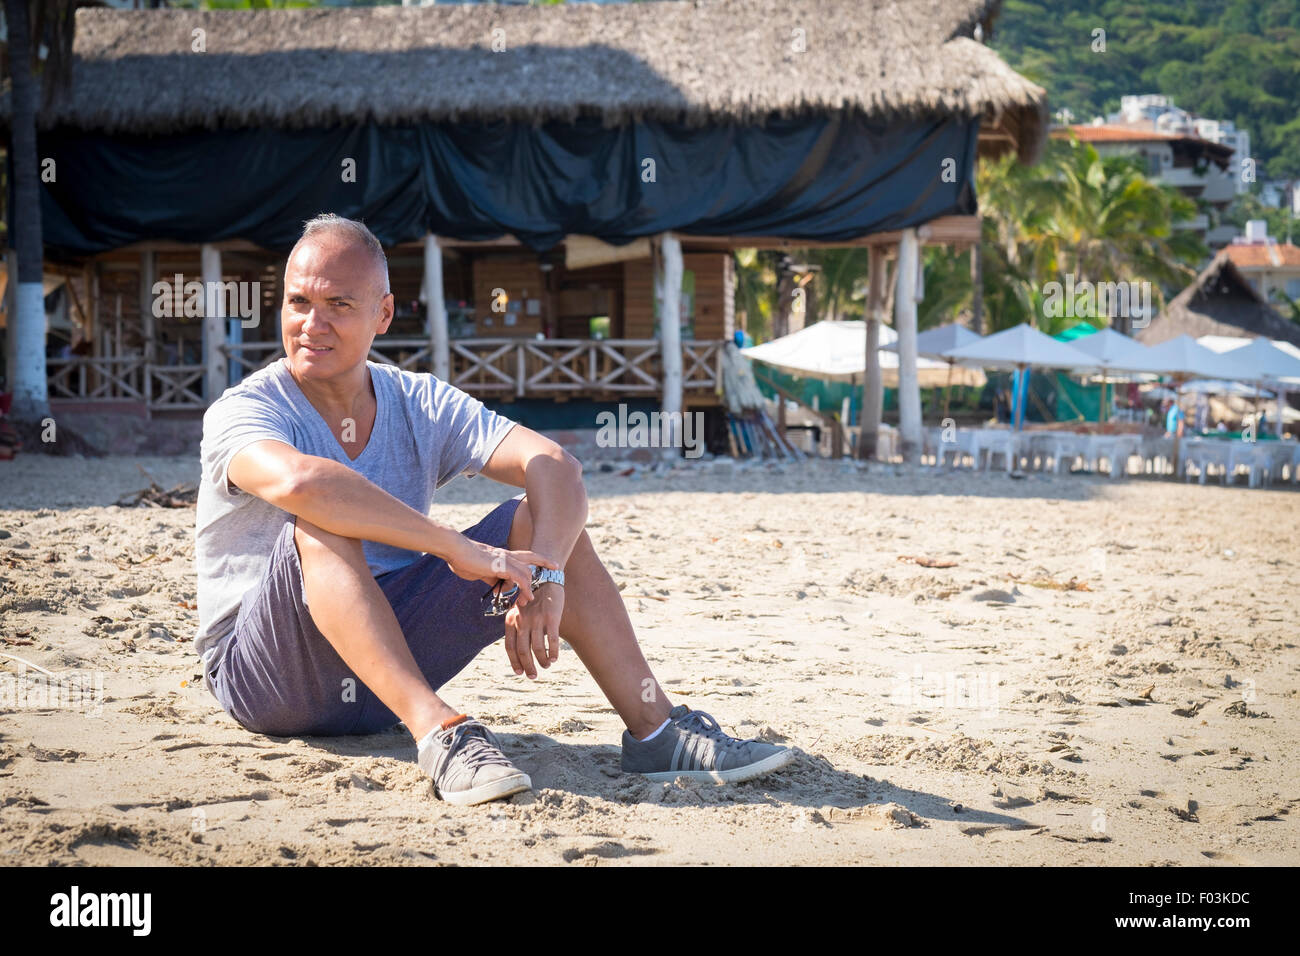 Tourismus in Puerto Vallarta, Mexiko. Mann, 55 Jahre alt, hispanische Ethnizität, im Sand sitzen. Palapa-Restaurant in der Hinterg Stockfoto